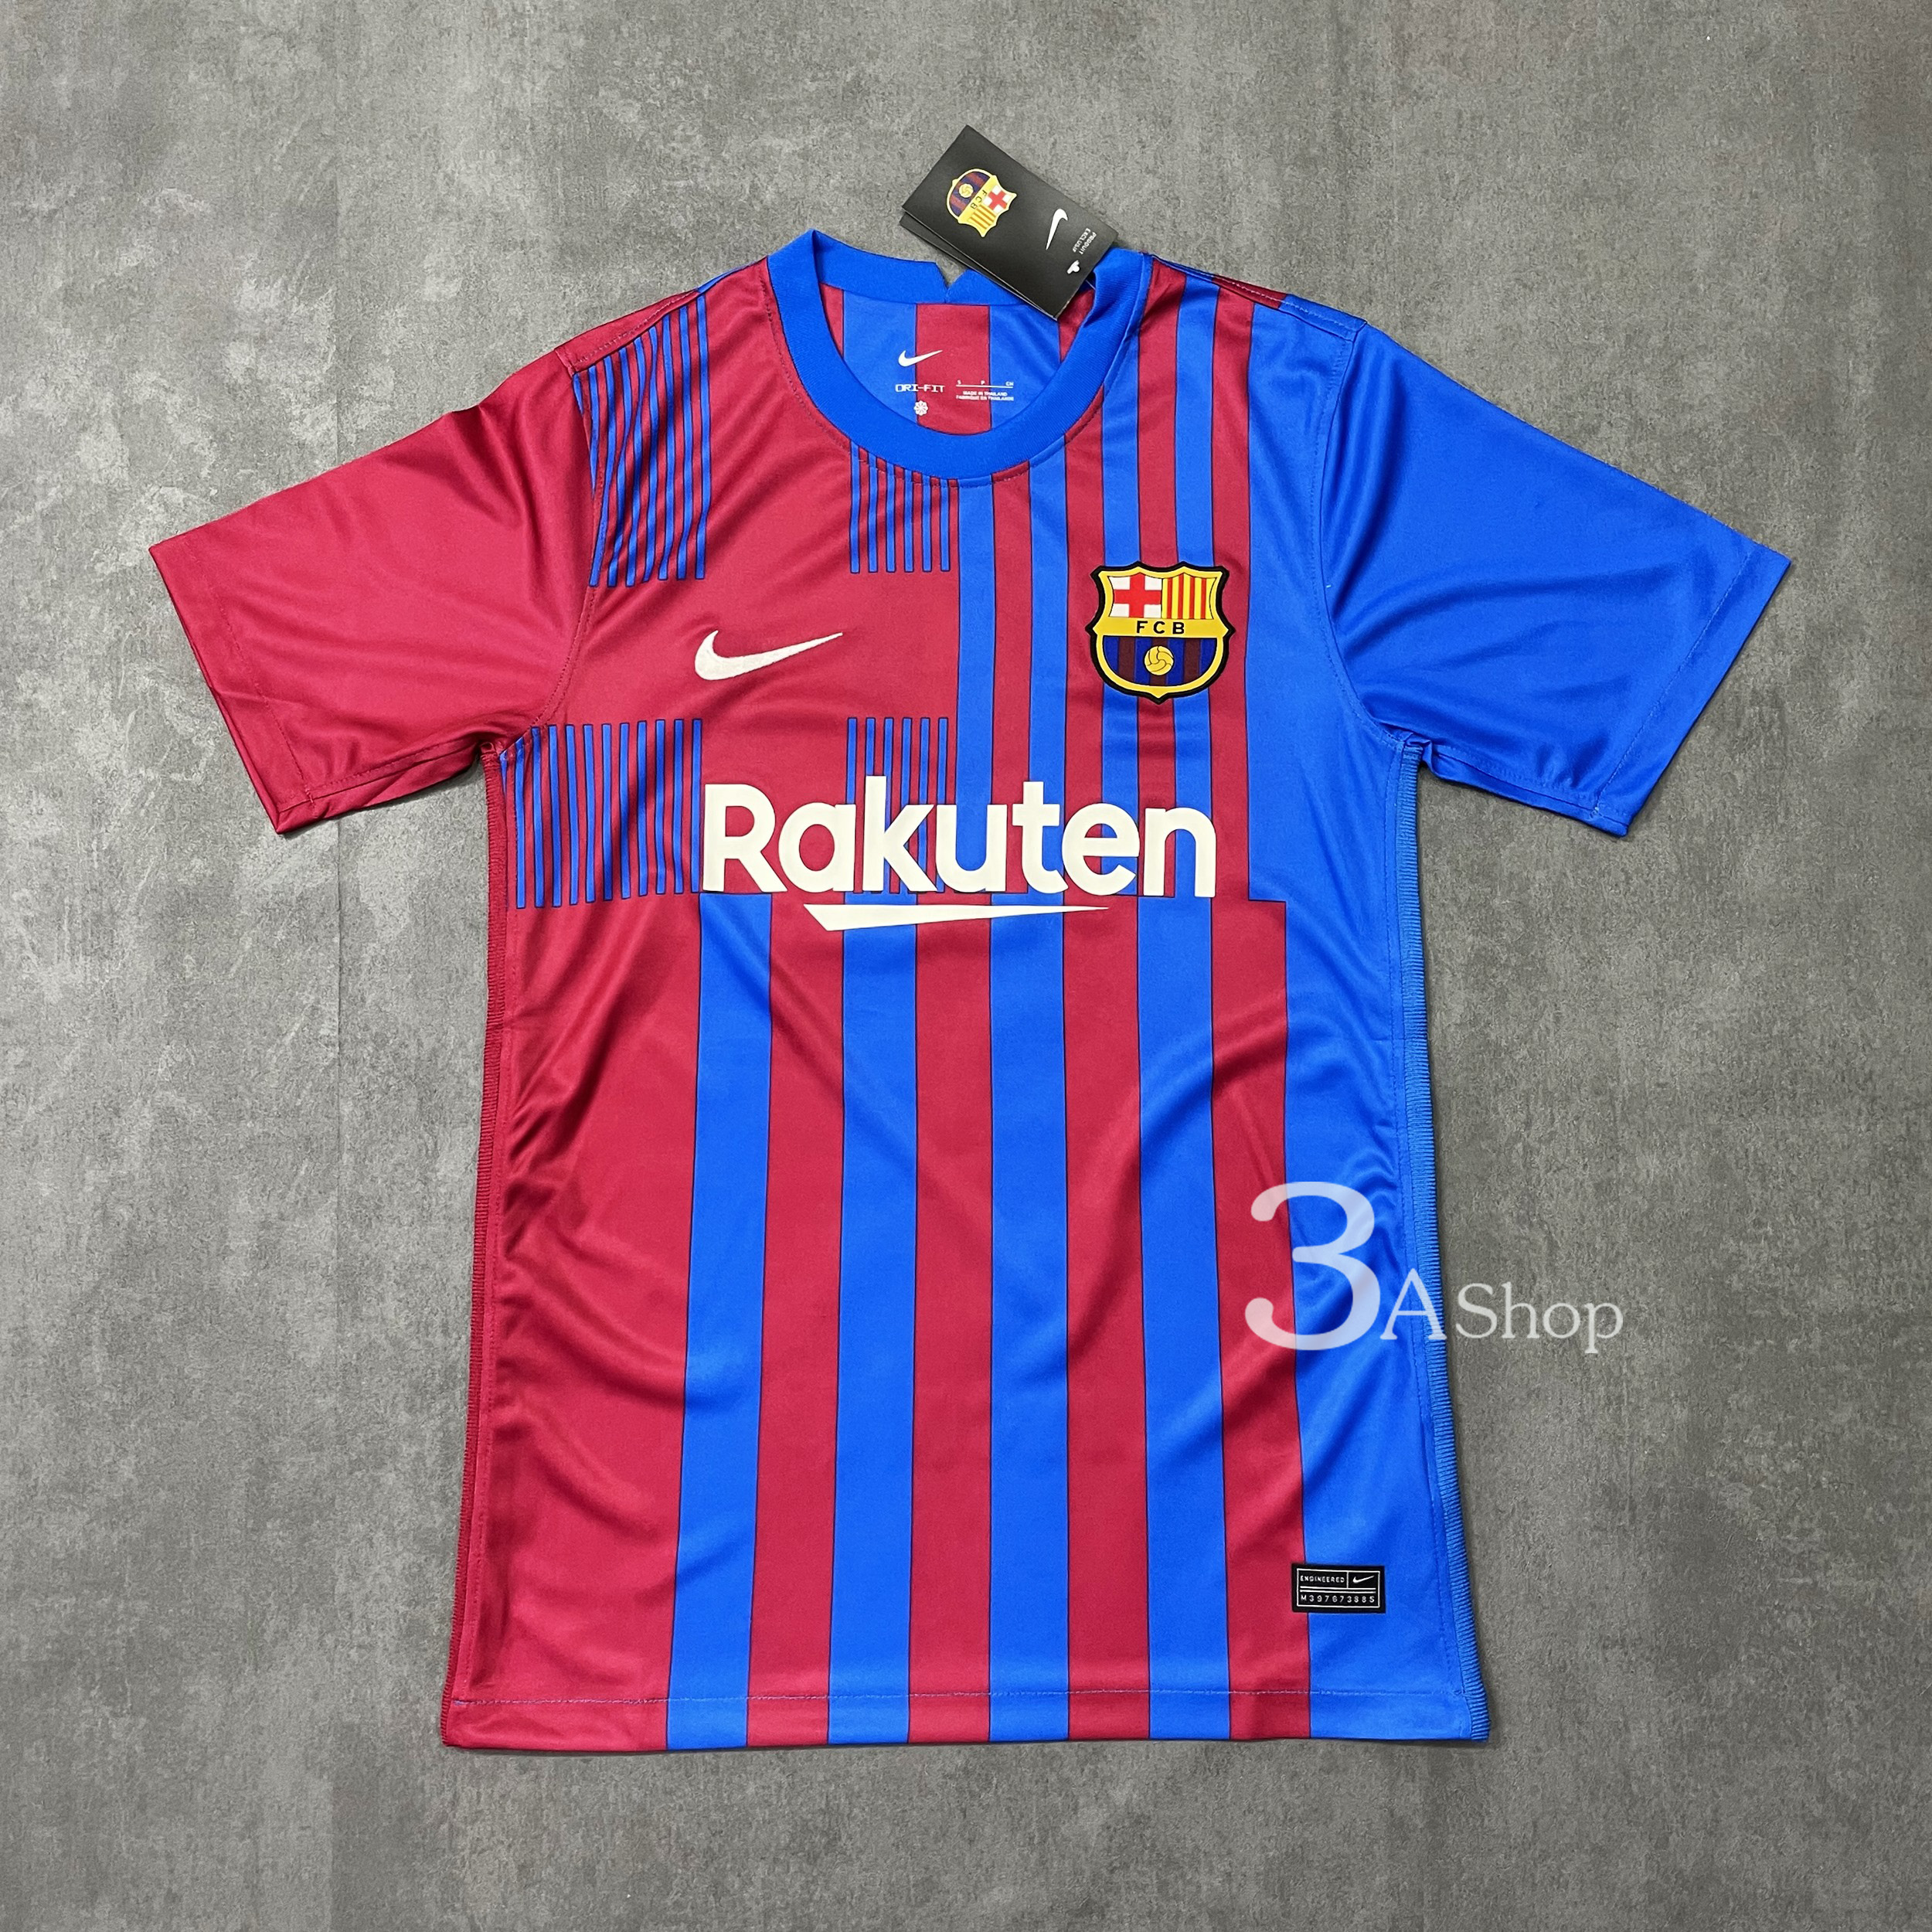 New Barcelona 21/22 HOME FOOTBALL SHIRT SOCCER JERSEY เสื้อบอล เสื้อฟุตบอลชาย เสื้อบอลชาย เสื้อกีฬาชาย2021 เสื้อทีมบาซ่า ใหม่ ปี21/22 เกรด 3A